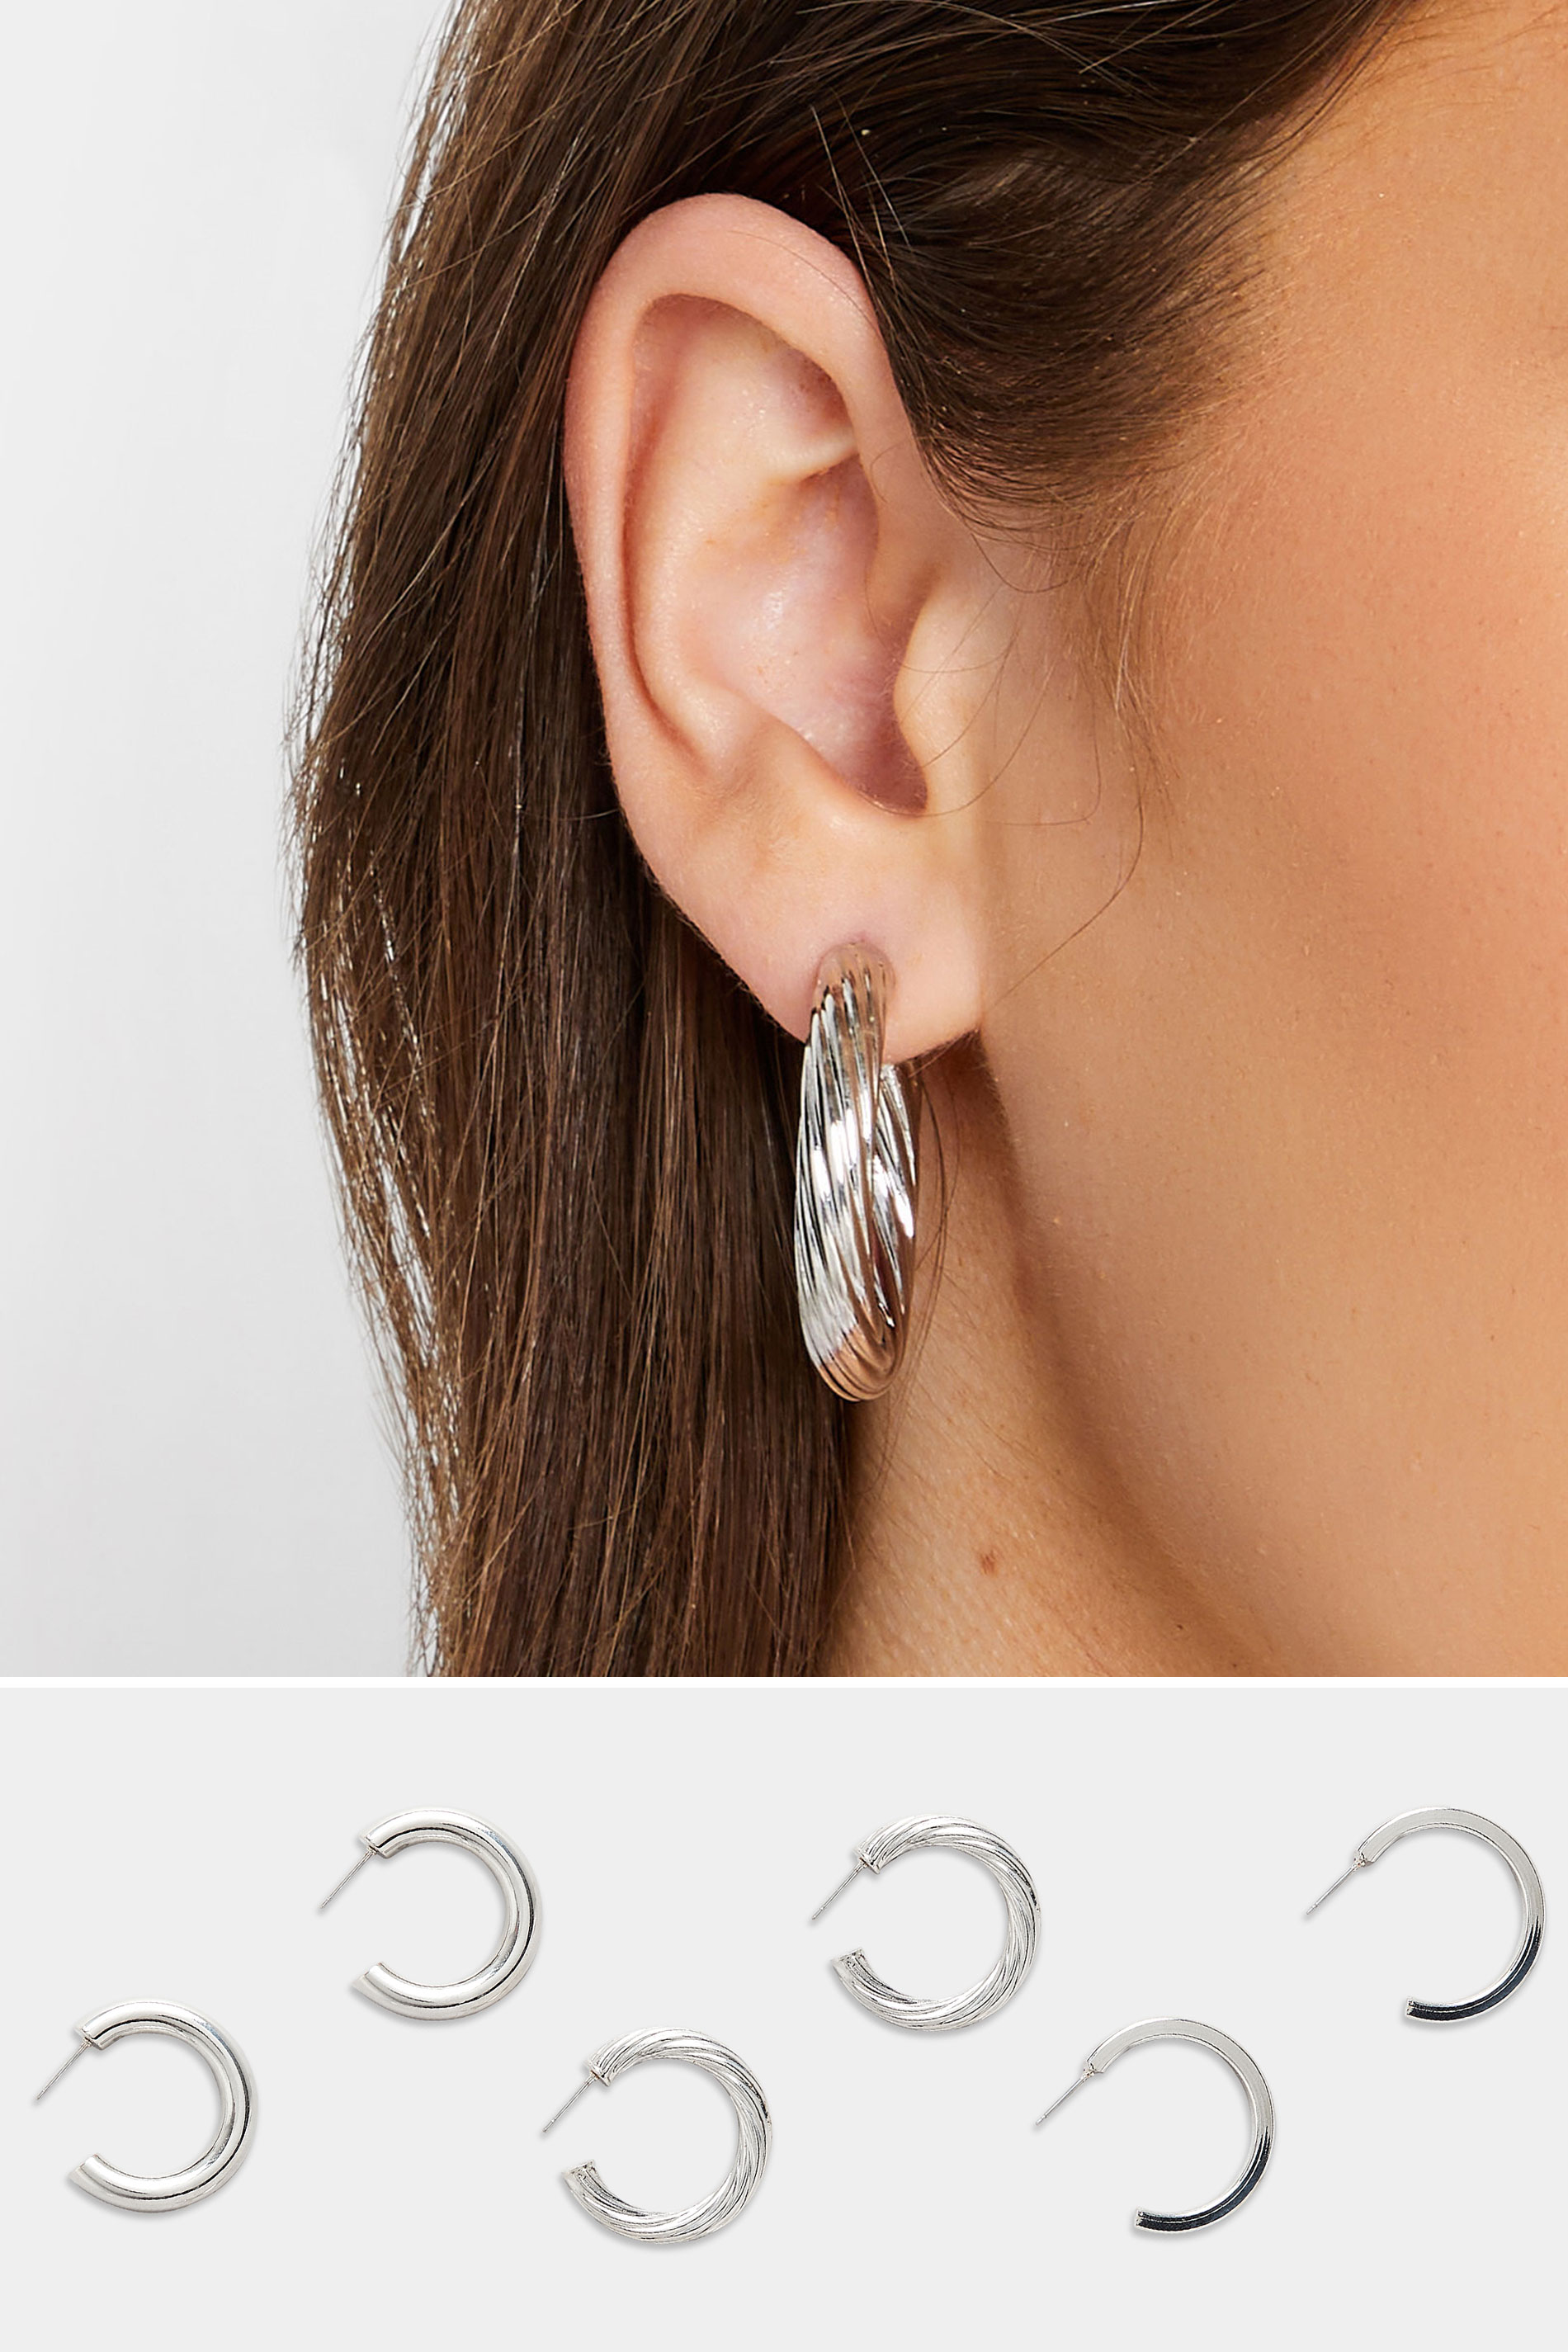 Sterling Silver Hoop Earrings - 3 Pack